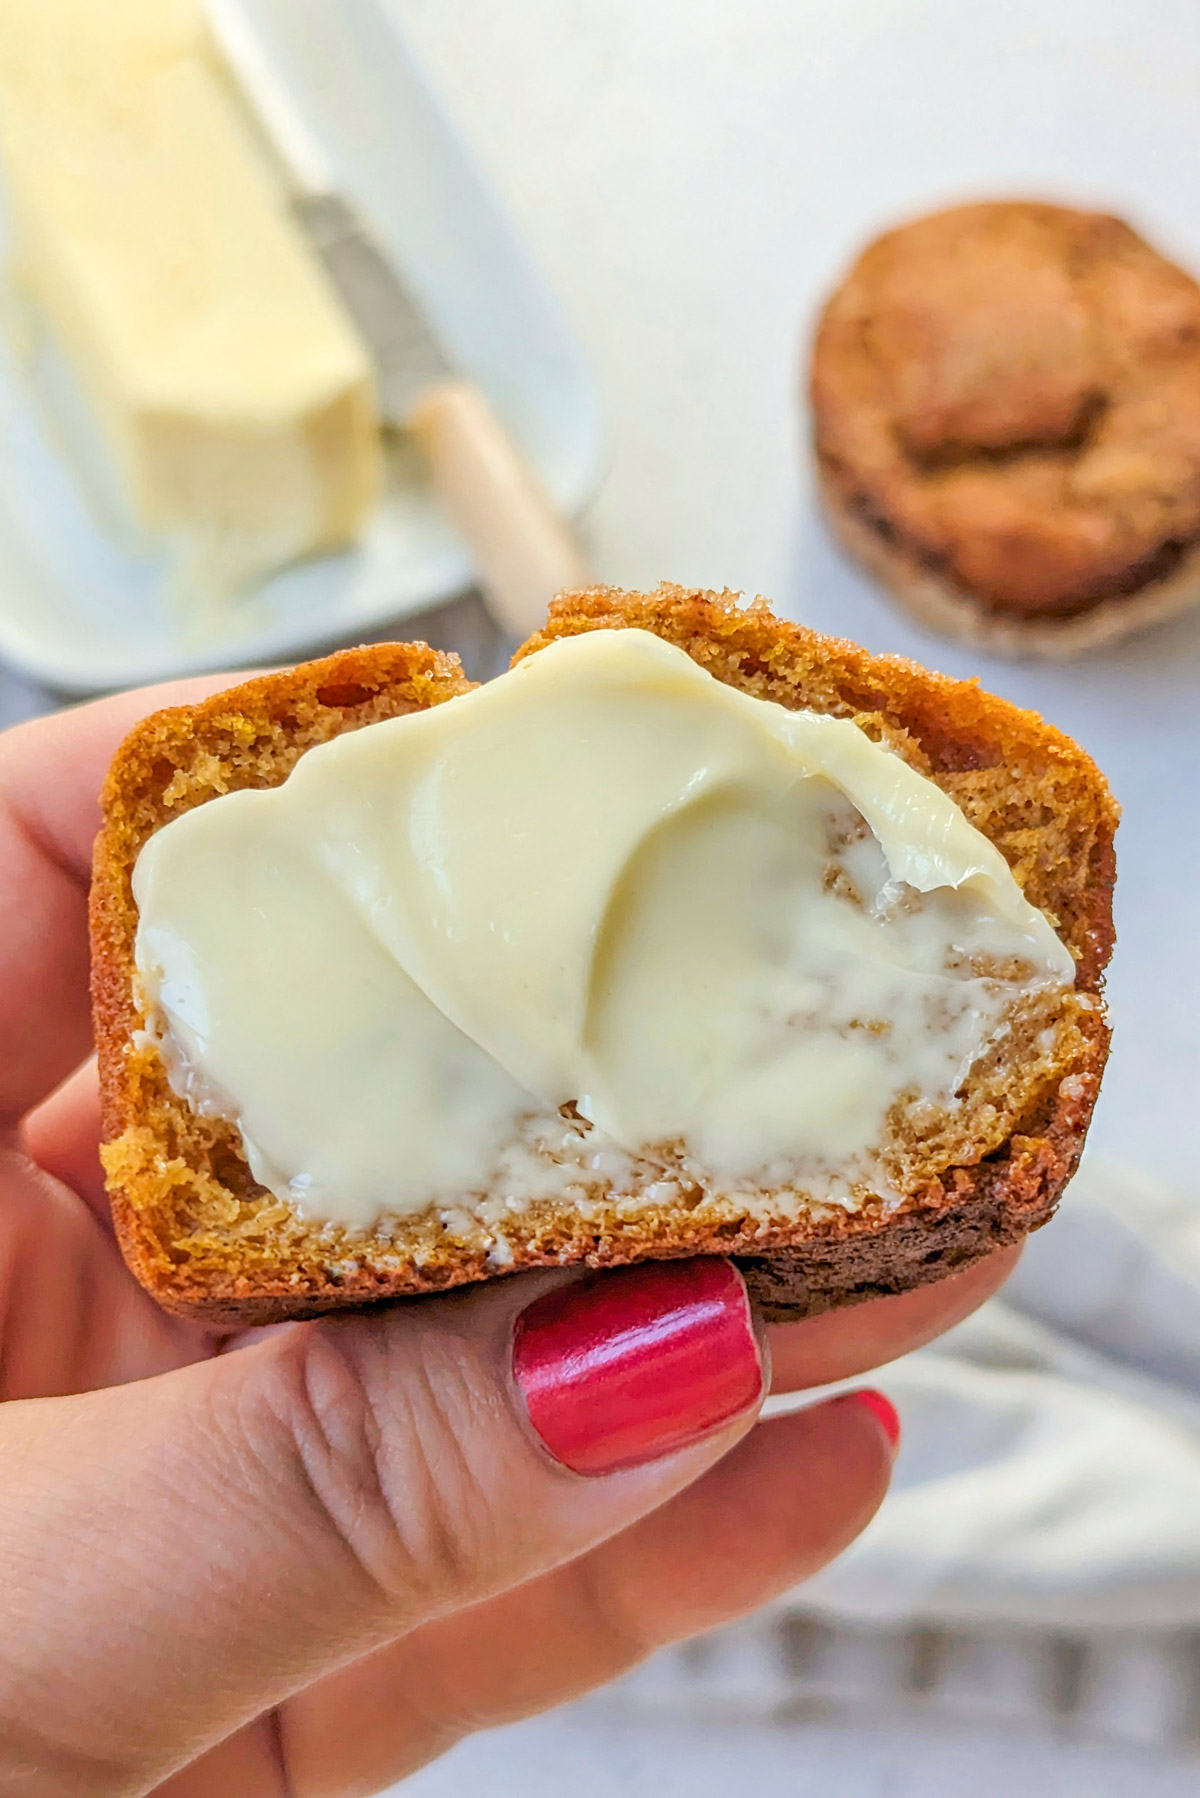 A cut open Kodiak Cakes Pumpkin Muffin with butter on it.